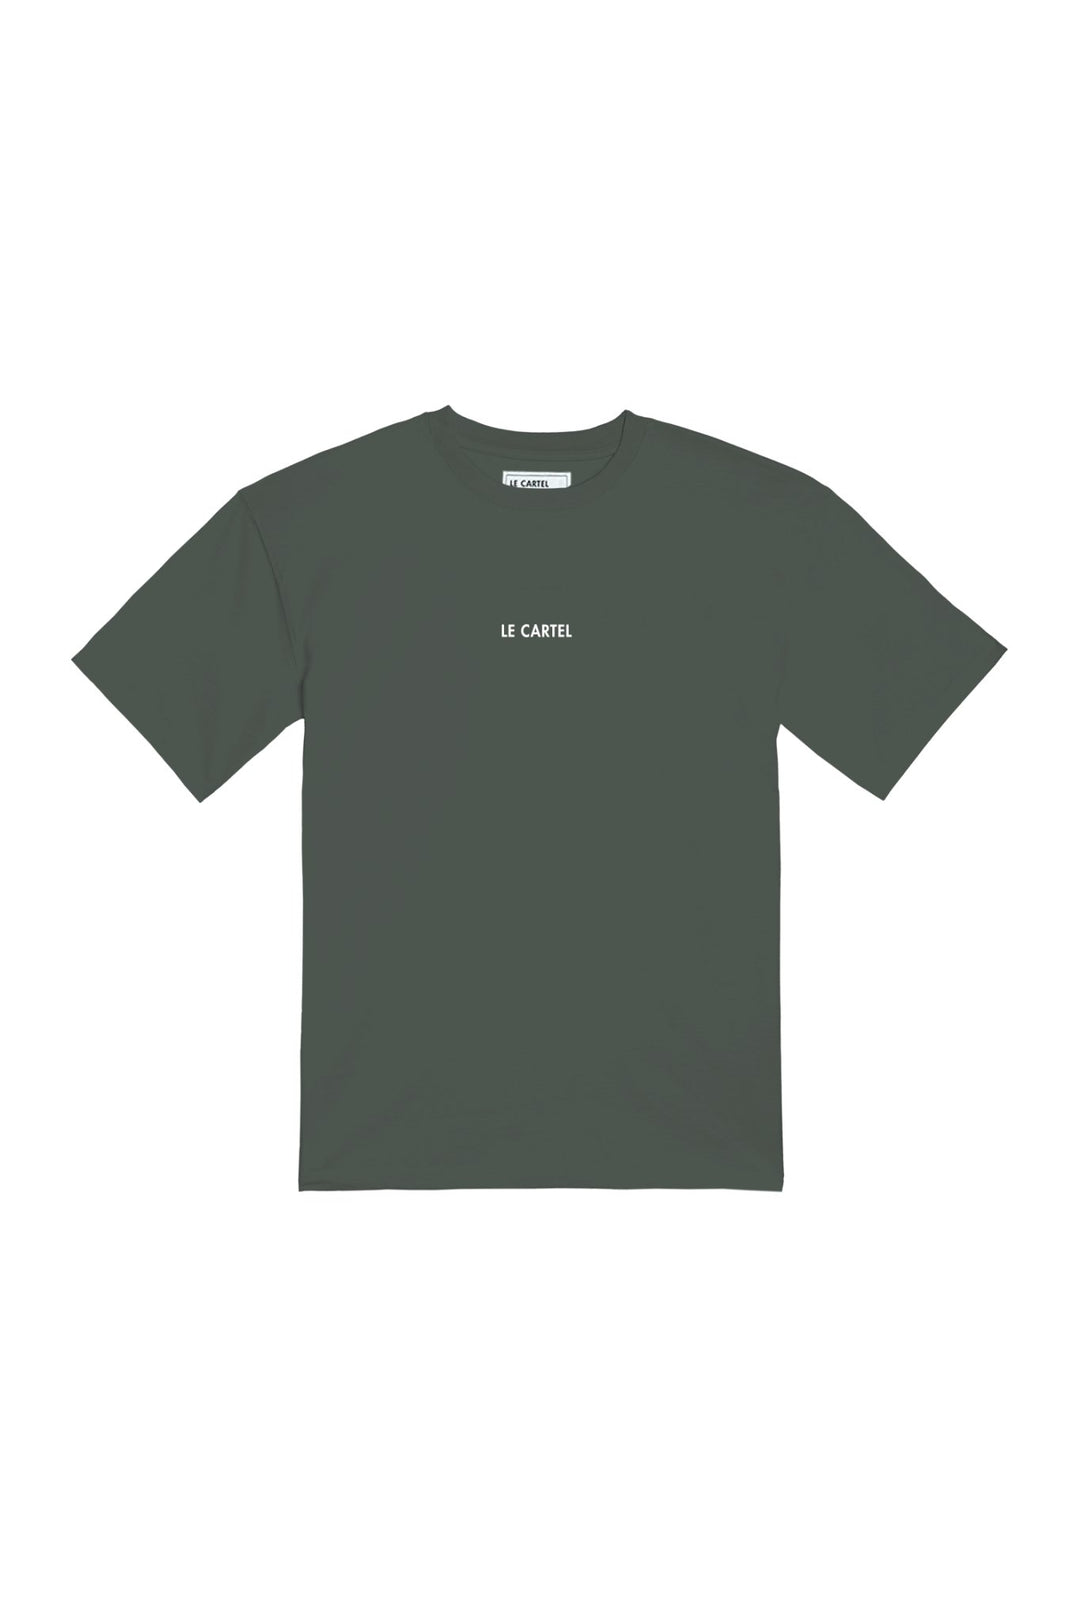 DOUBLE SERVICE・T-shirt unisexe・Kaki - Le Cartel